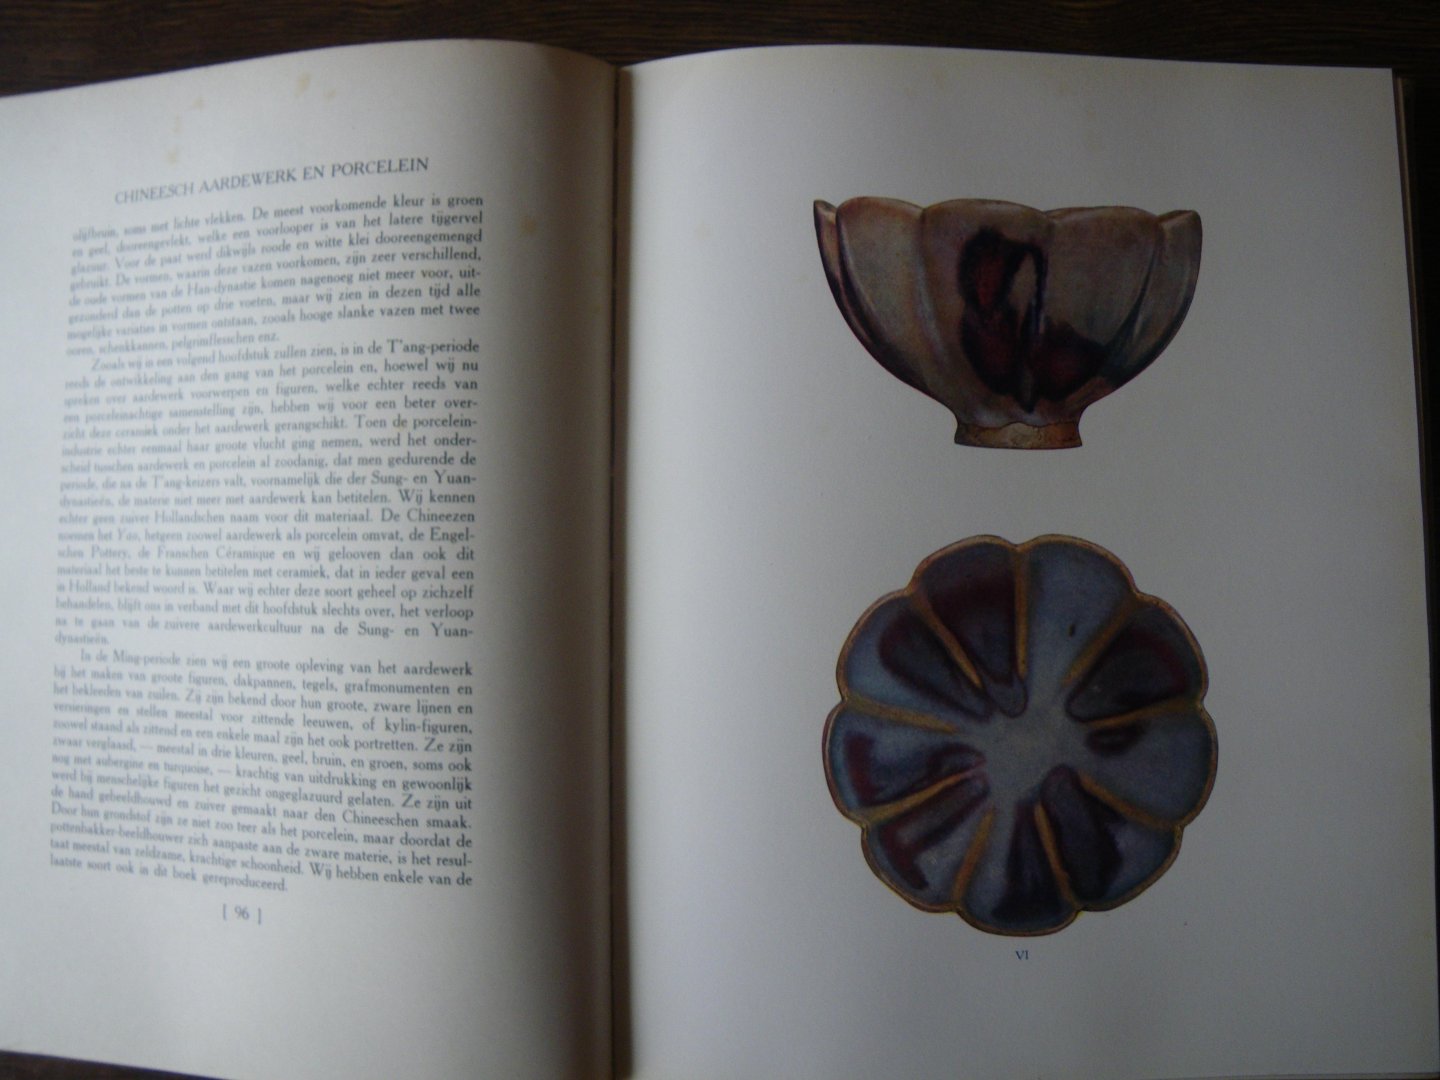 KLEYKAMP, A.J., - Chineesch aardewerk en porcelein, vanaf zijn oorsprong tot aan zijn verval.